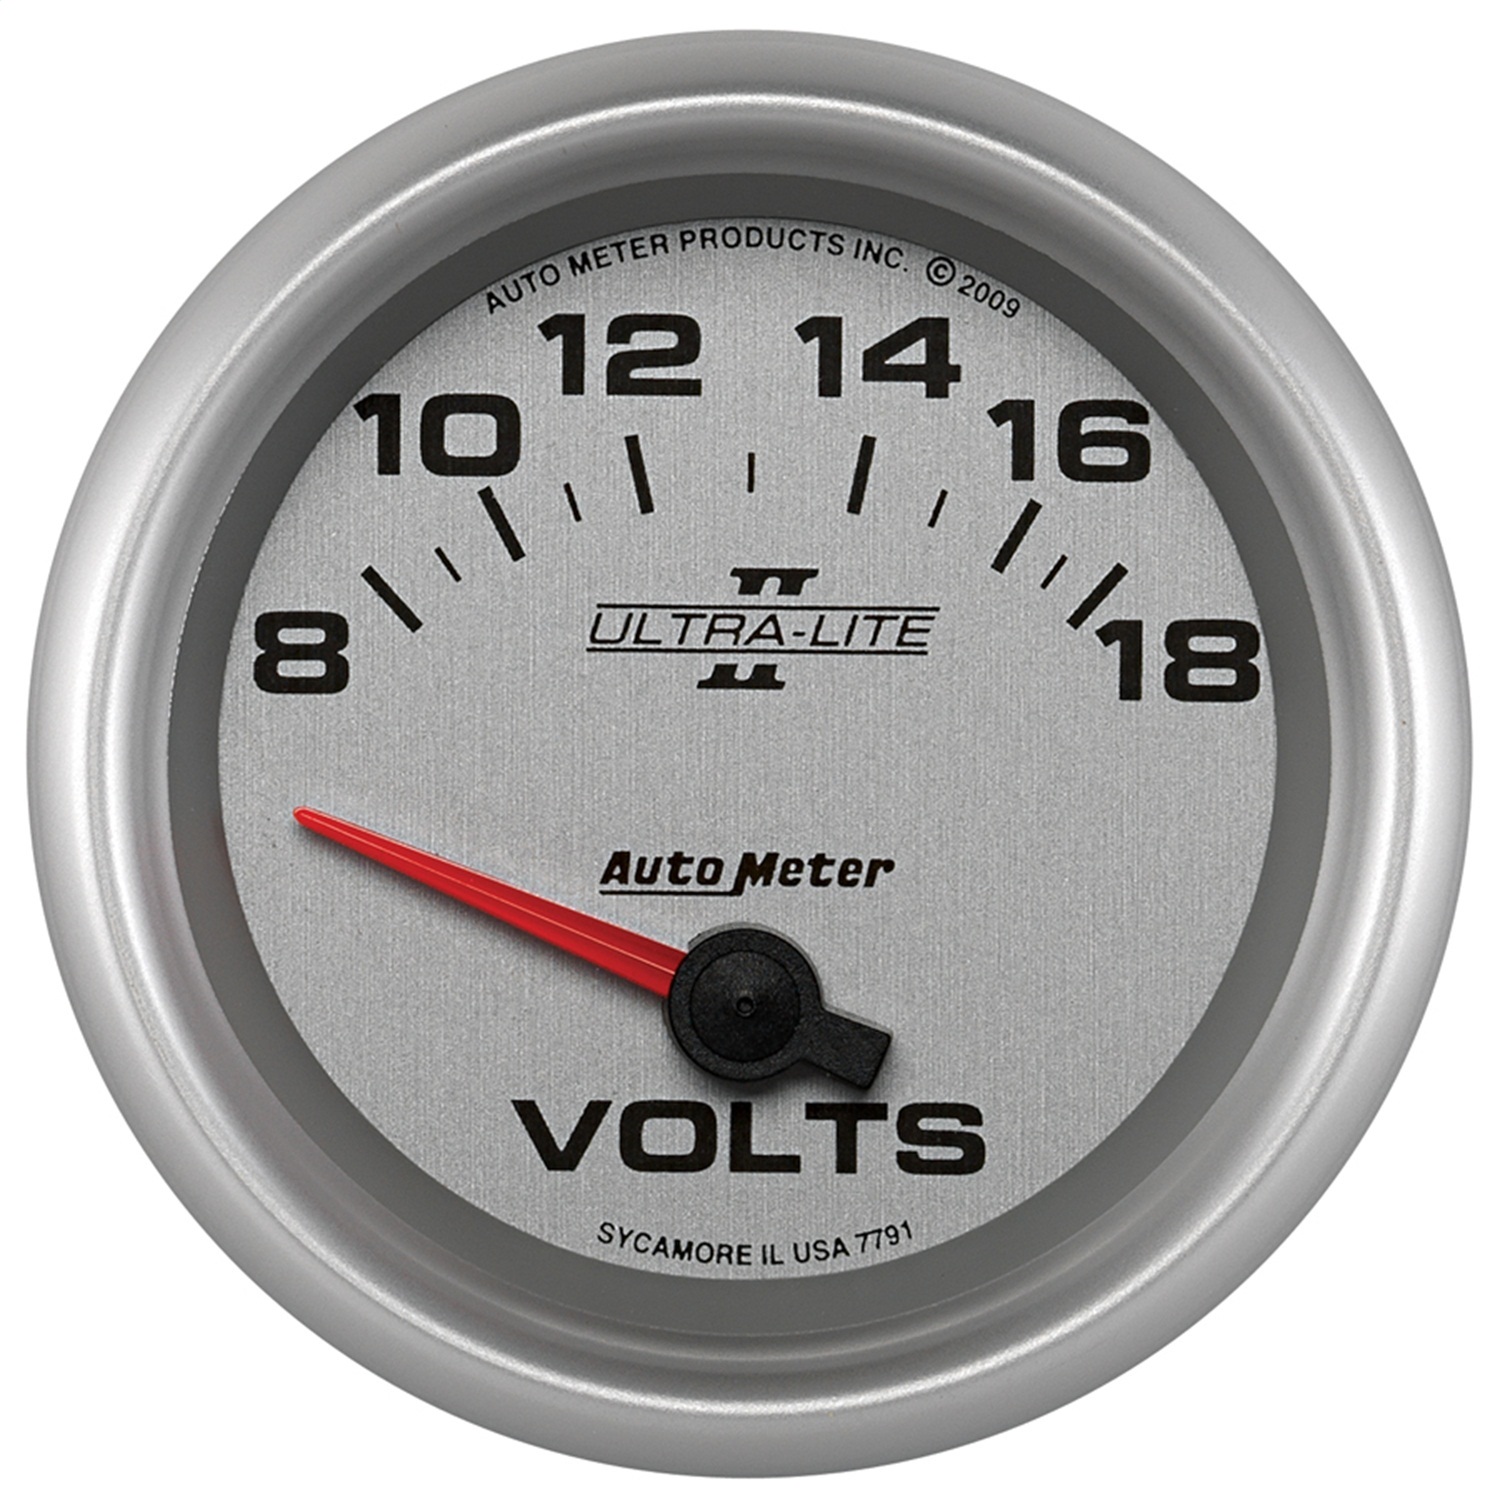 Auto Meter Auto Meter 7791 Ultra-Lite II; Electric Voltmeter Gauge